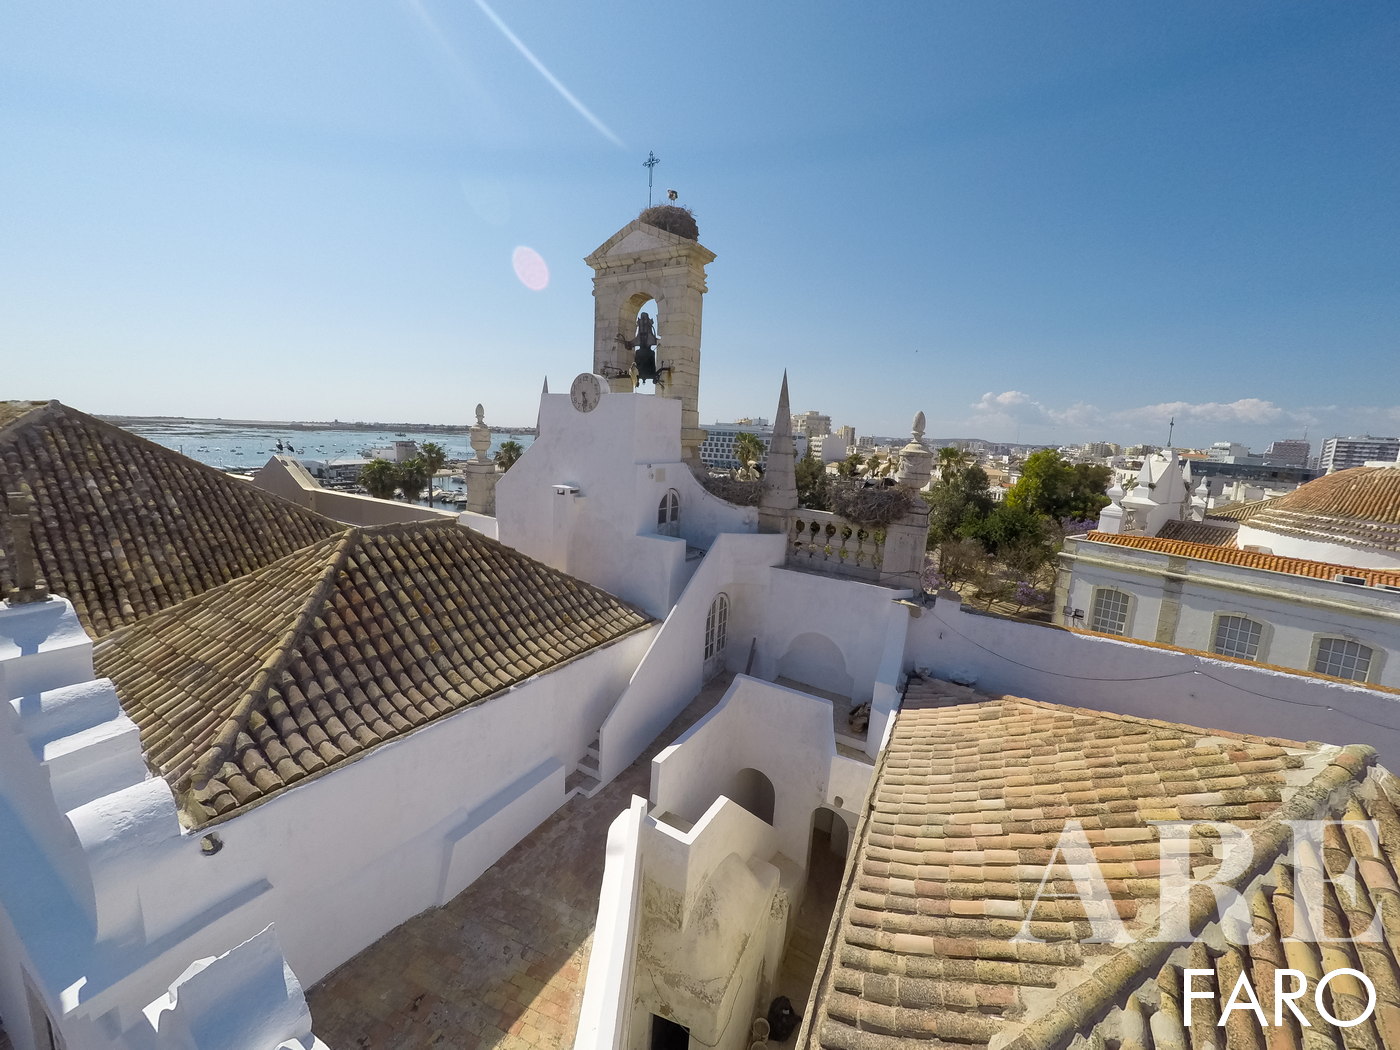 Vista aérea de los encantadores tejados de terracota del casco antiguo de Faro, que muestra el pintoresco e histórico paisaje urbano de esta joya del Algarve.